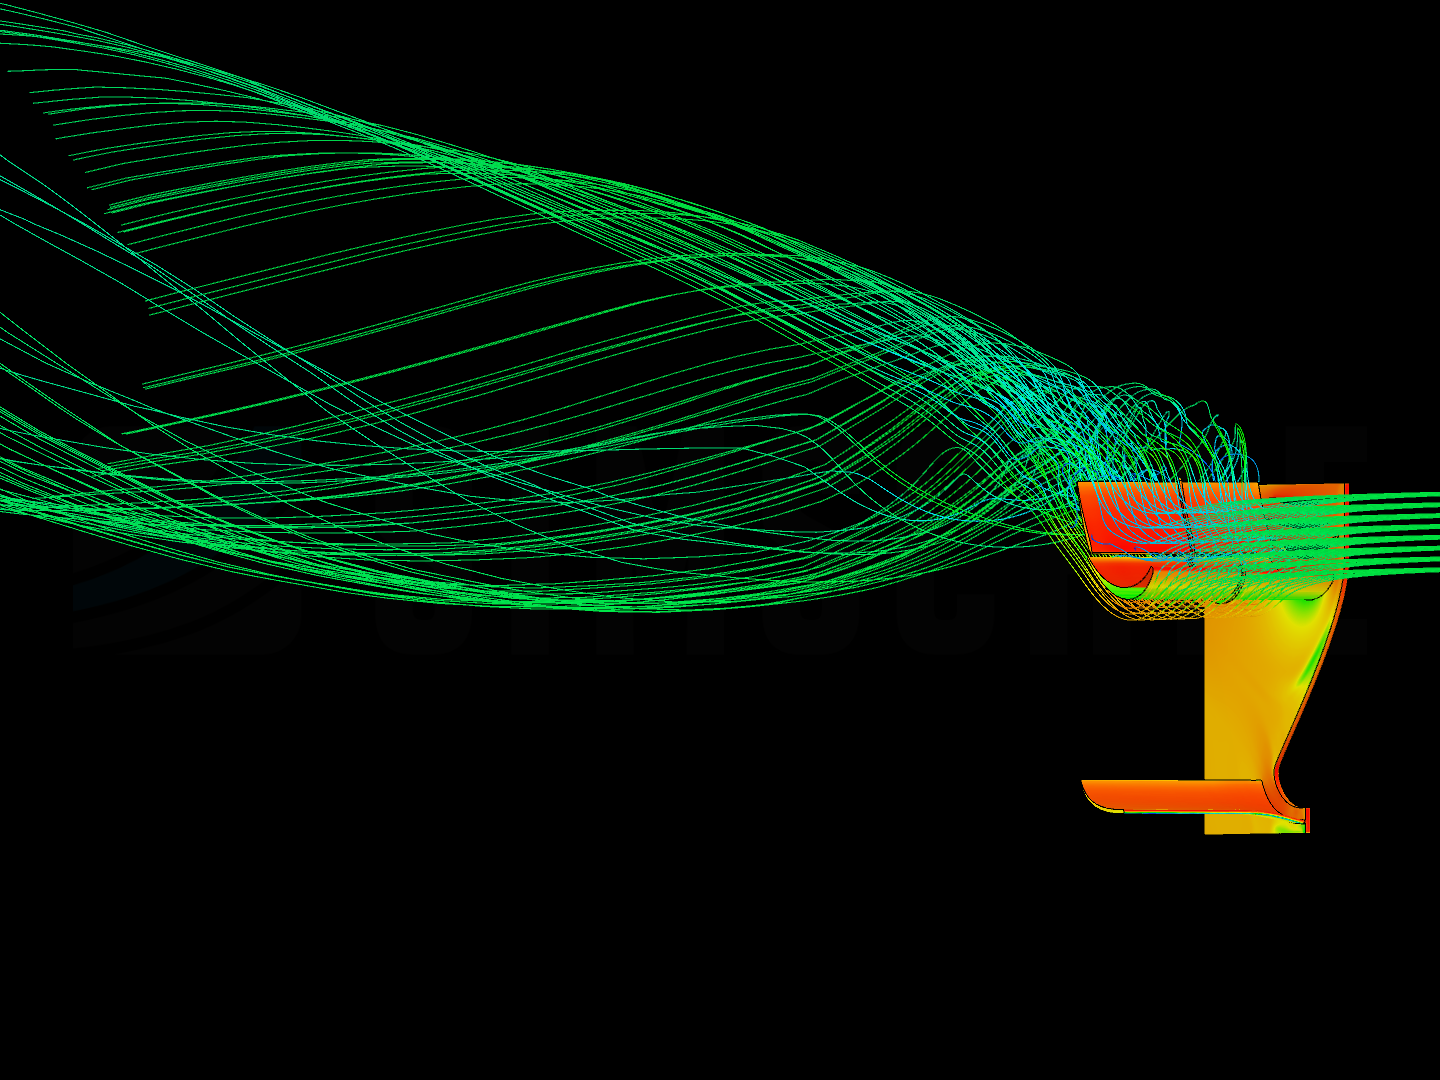 F1 Rear Wing Aerodynamic Analysis image